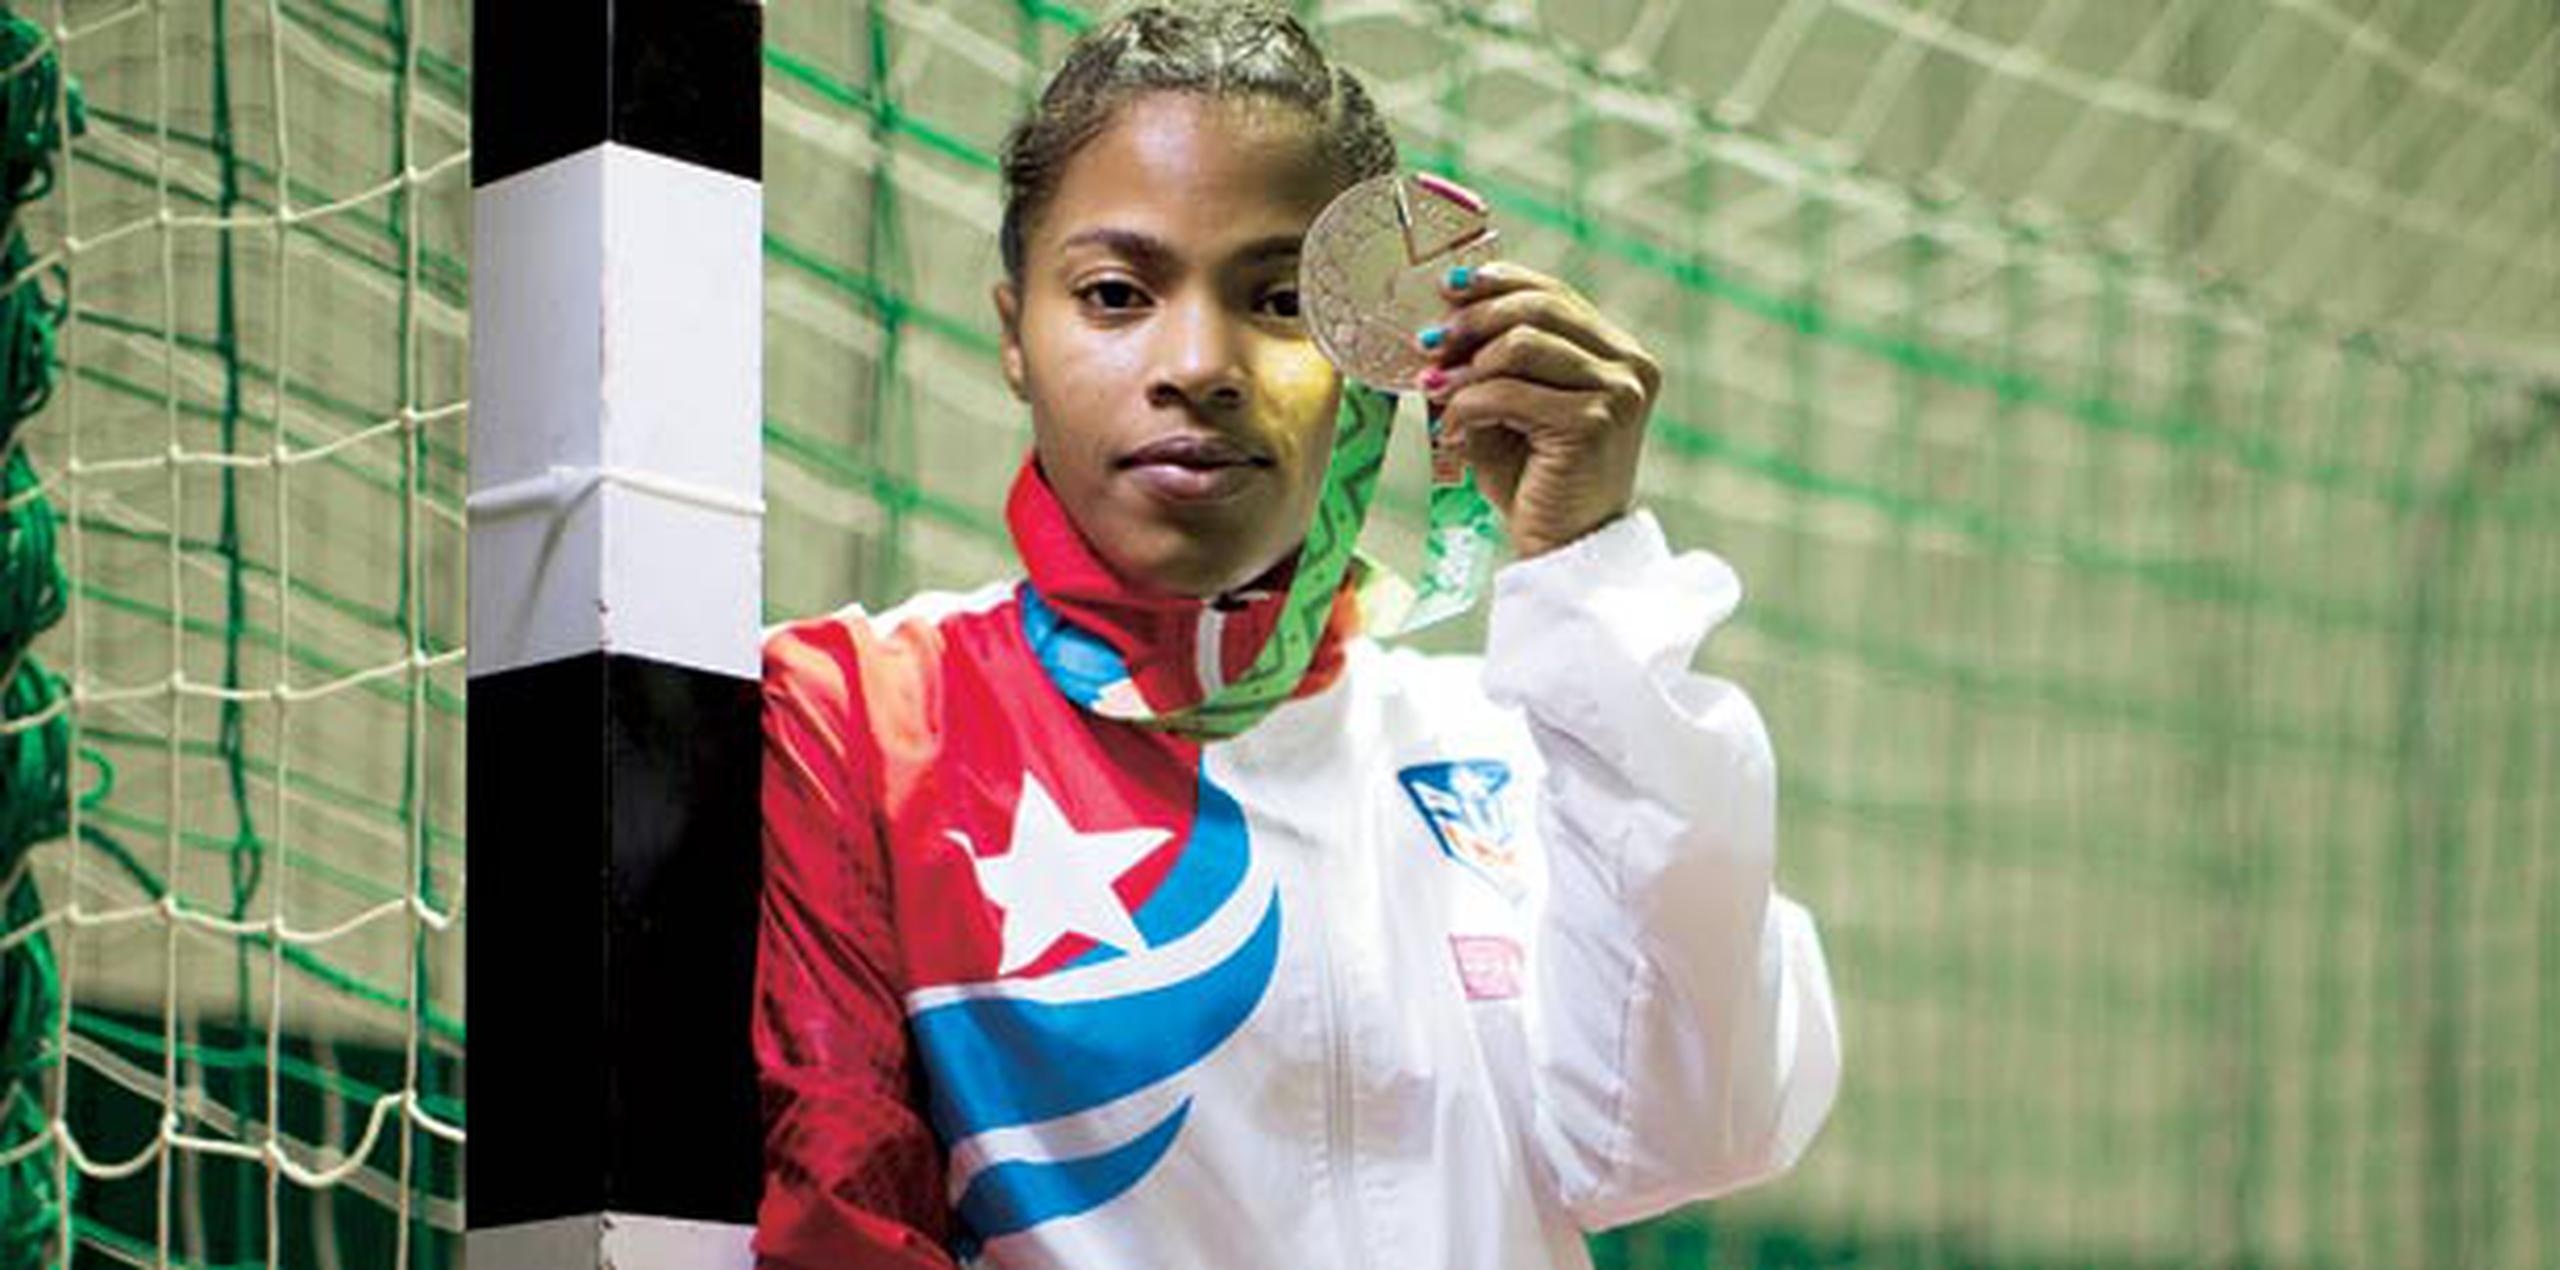 Nathalys Ceballos y el Equipo Nacional de balonmano femenino ganaron plata en Veracruz 2014 y luego clasificaron a la Copa Mundial. (Archivo)